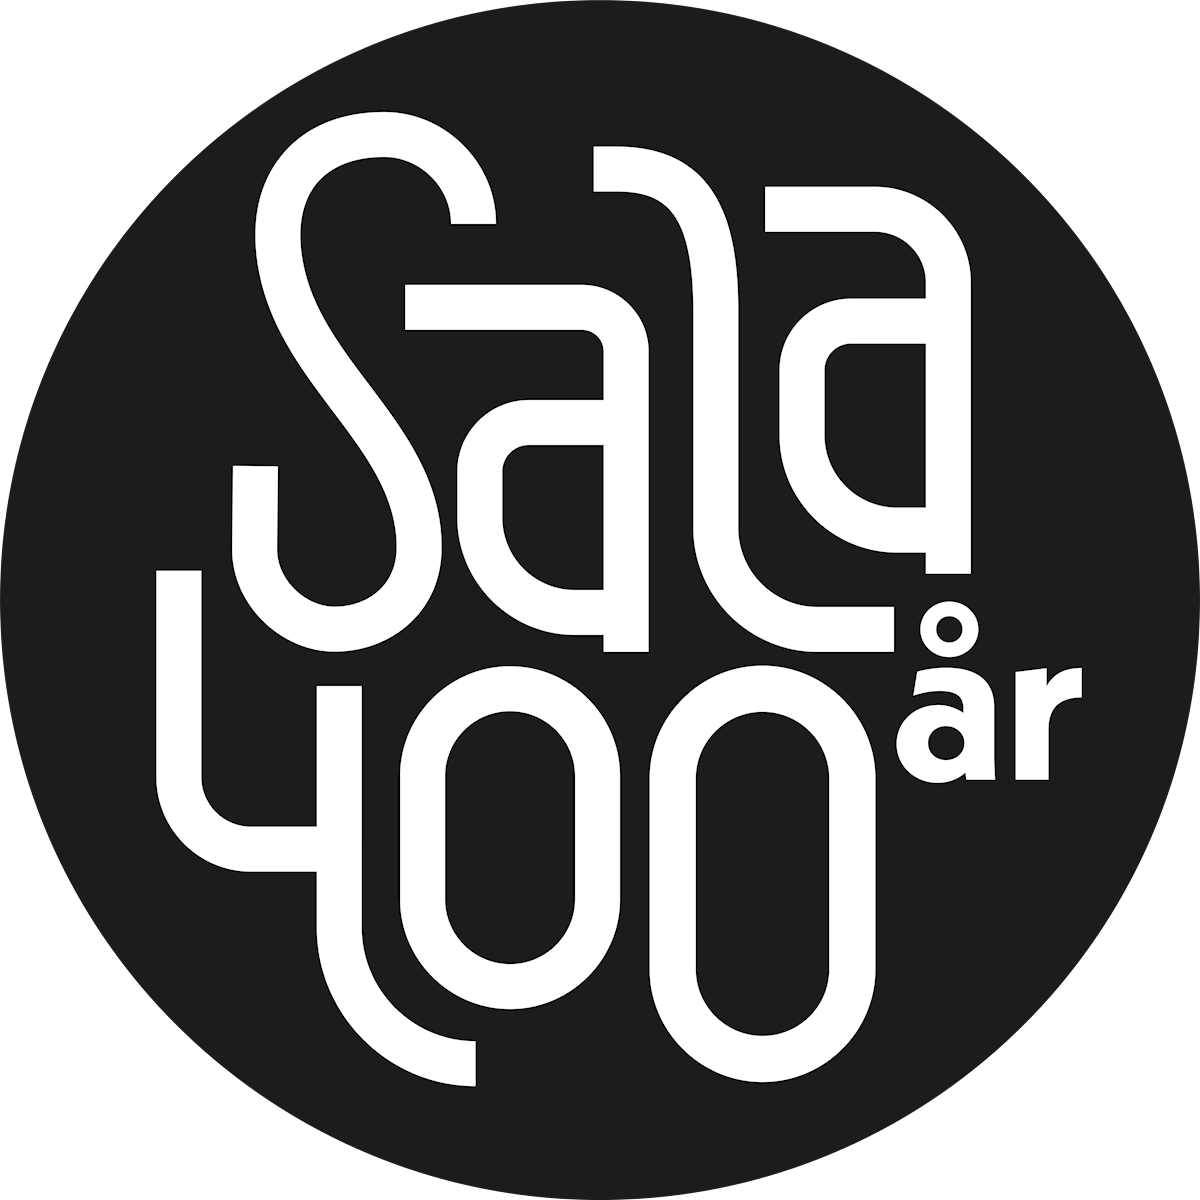 Logotypen för Sala 400 år, vit version med svart bakgrund.